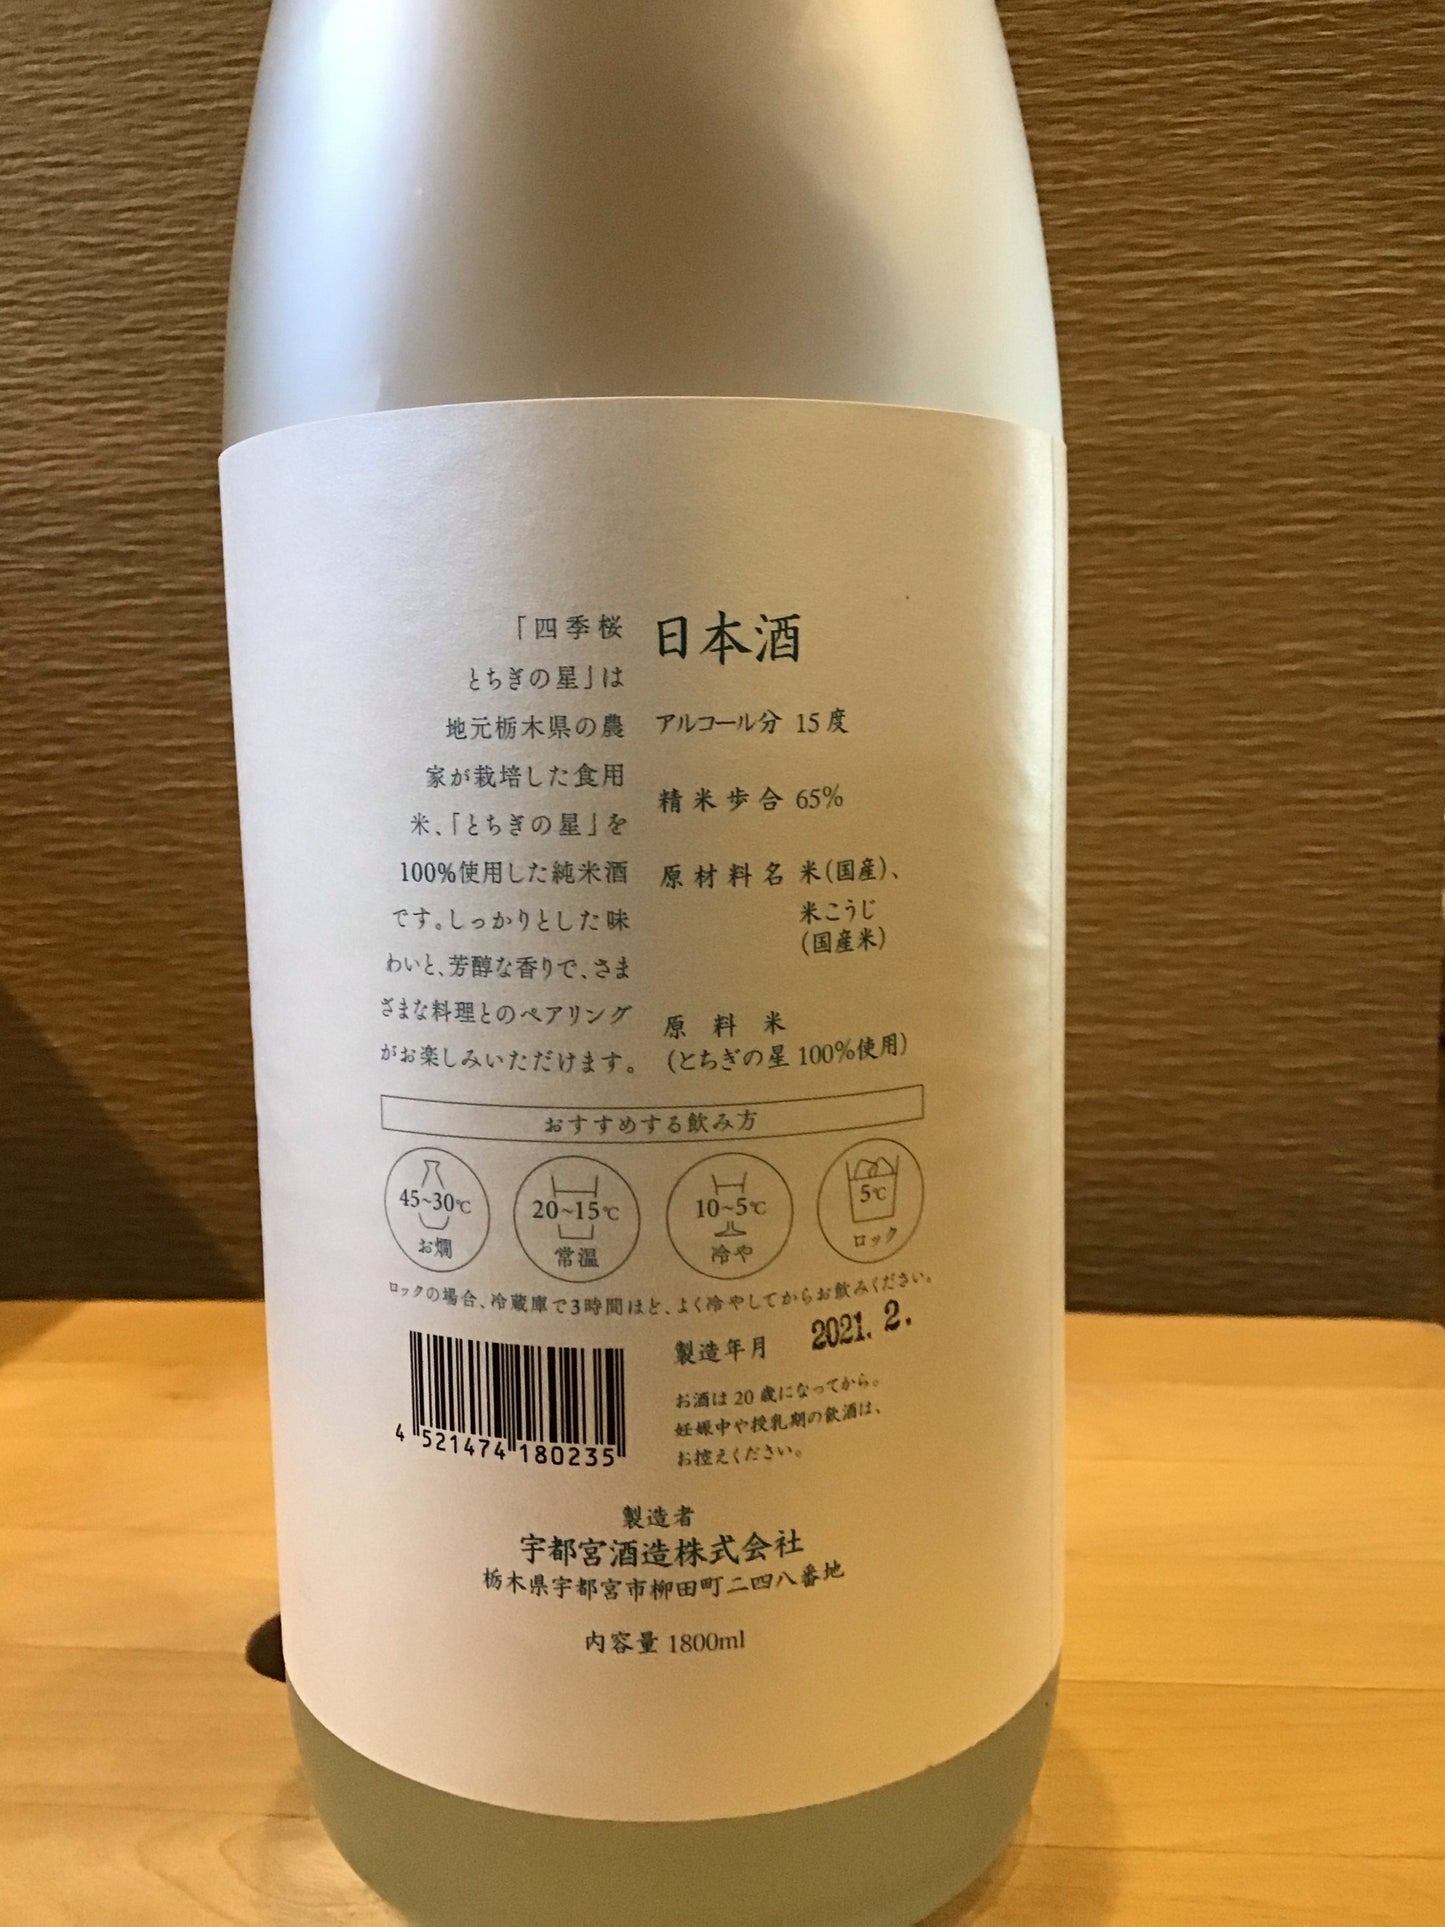 四季桜 とちぎの星 純米酒 1,800ml